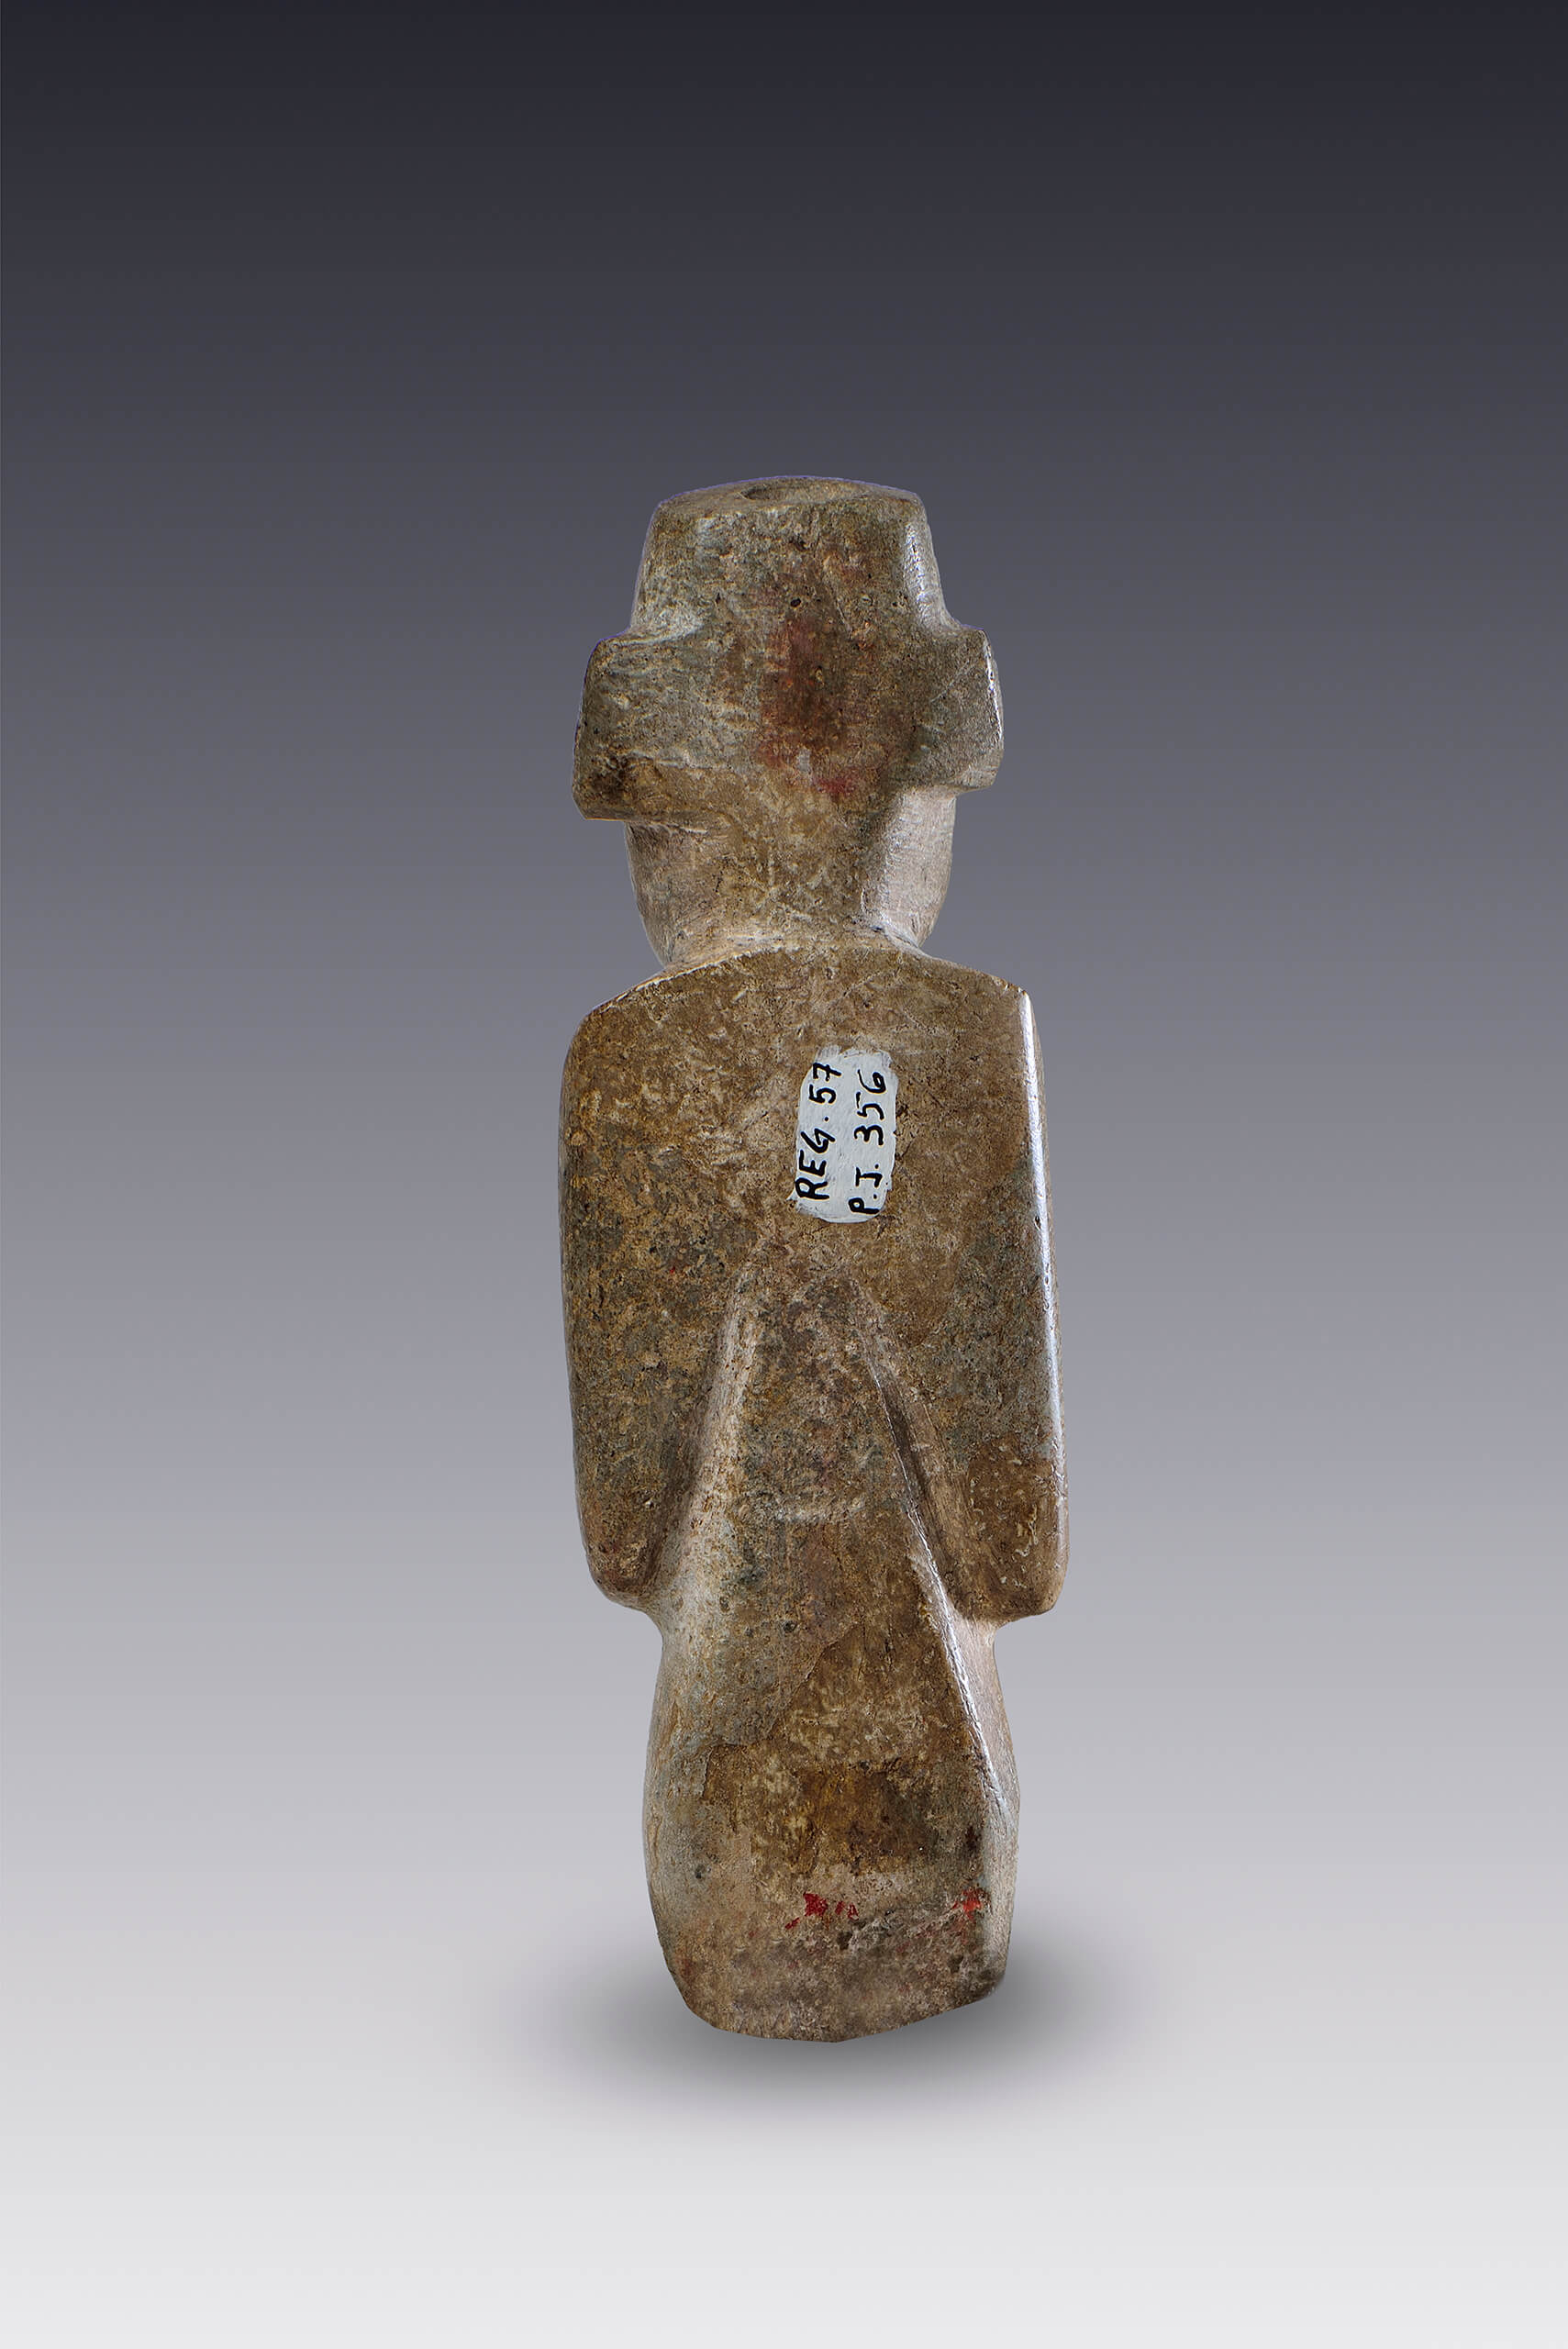 Hombre con las manos sobre el abdomen | El México antiguo. Salas de Arte Prehispánico | Museo Amparo, Puebla